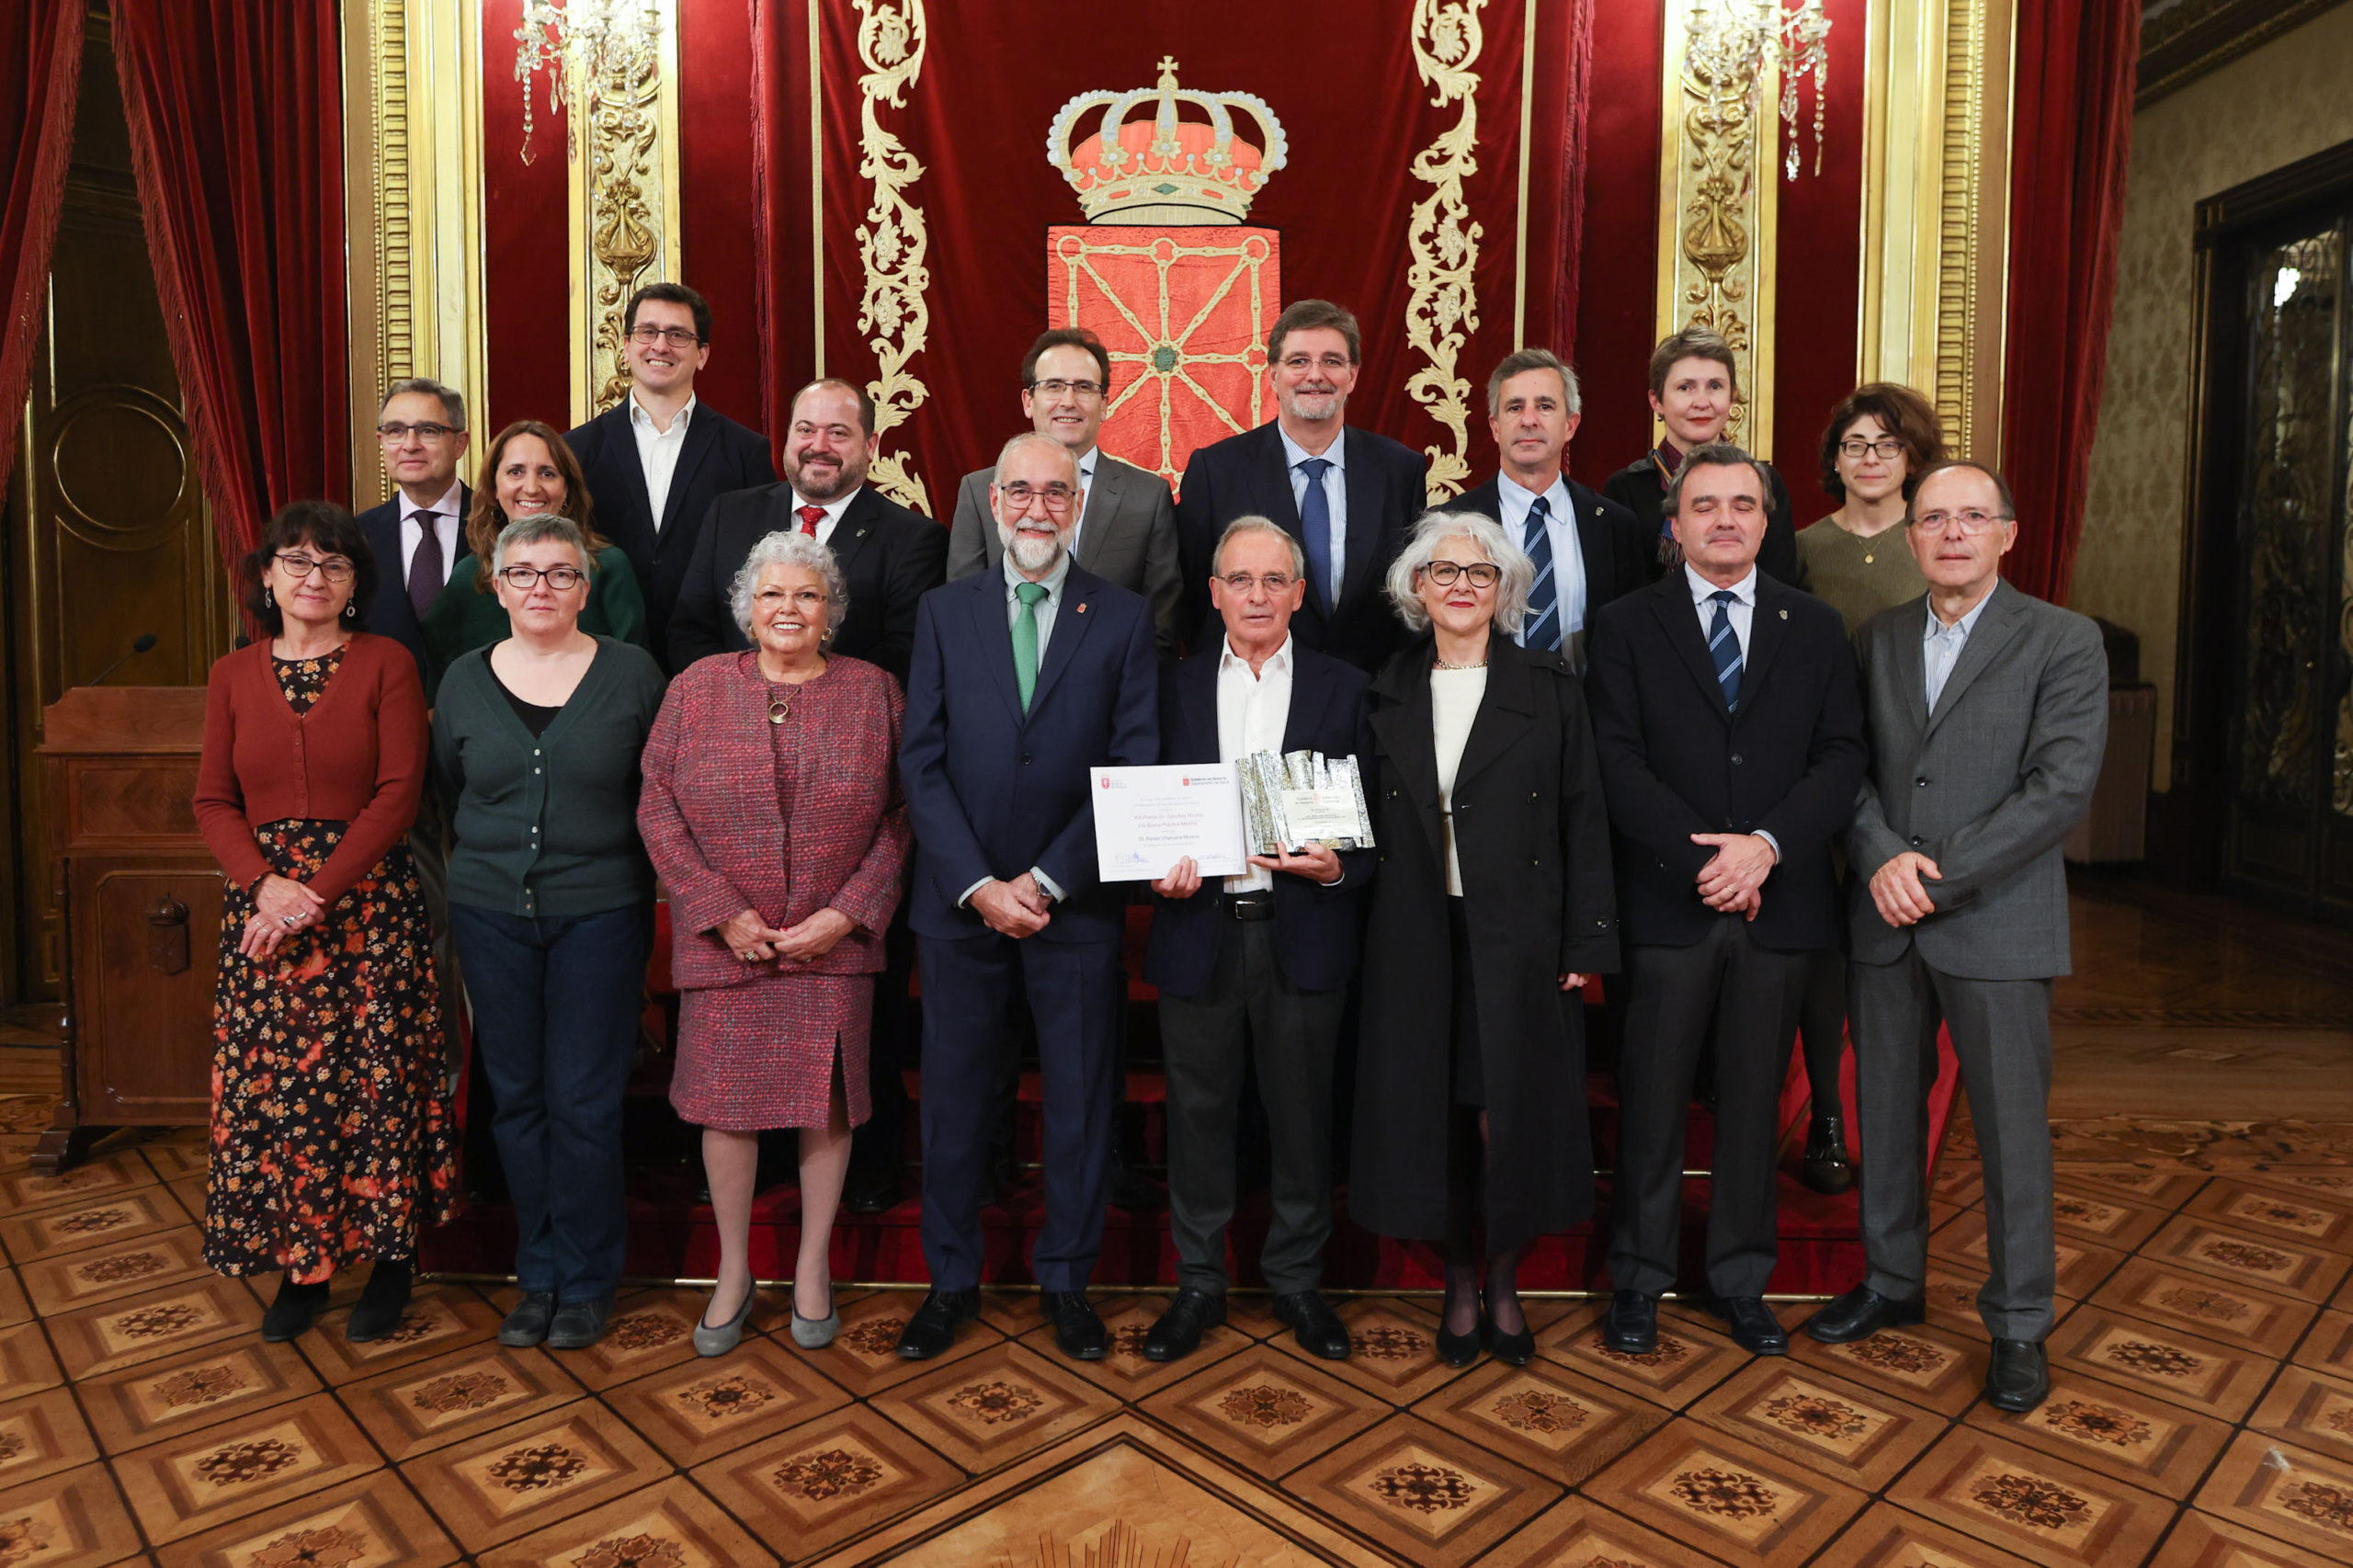 El médico de familia Ramón Villanueva recibe el XIII Premio Sánchez Nicolay a las Buenas Prácticas Médicas.